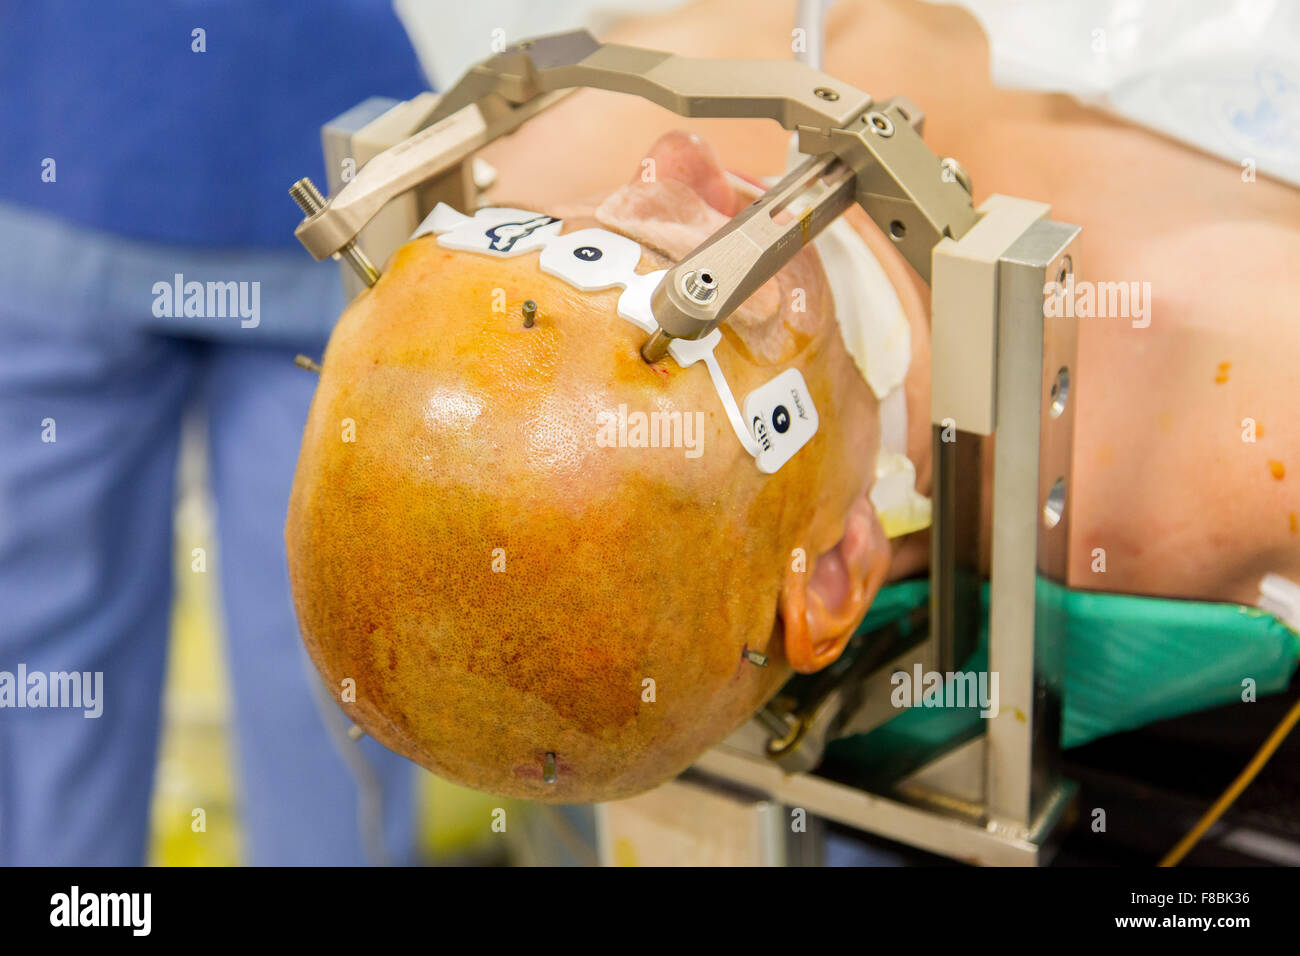 Chirurgische Behandlung der Parkinson-Krankheit durch tiefe Hirnstimulation mit Rosa® Roboter, Krankenhaus in Amiens, Frankreich. Stockfoto